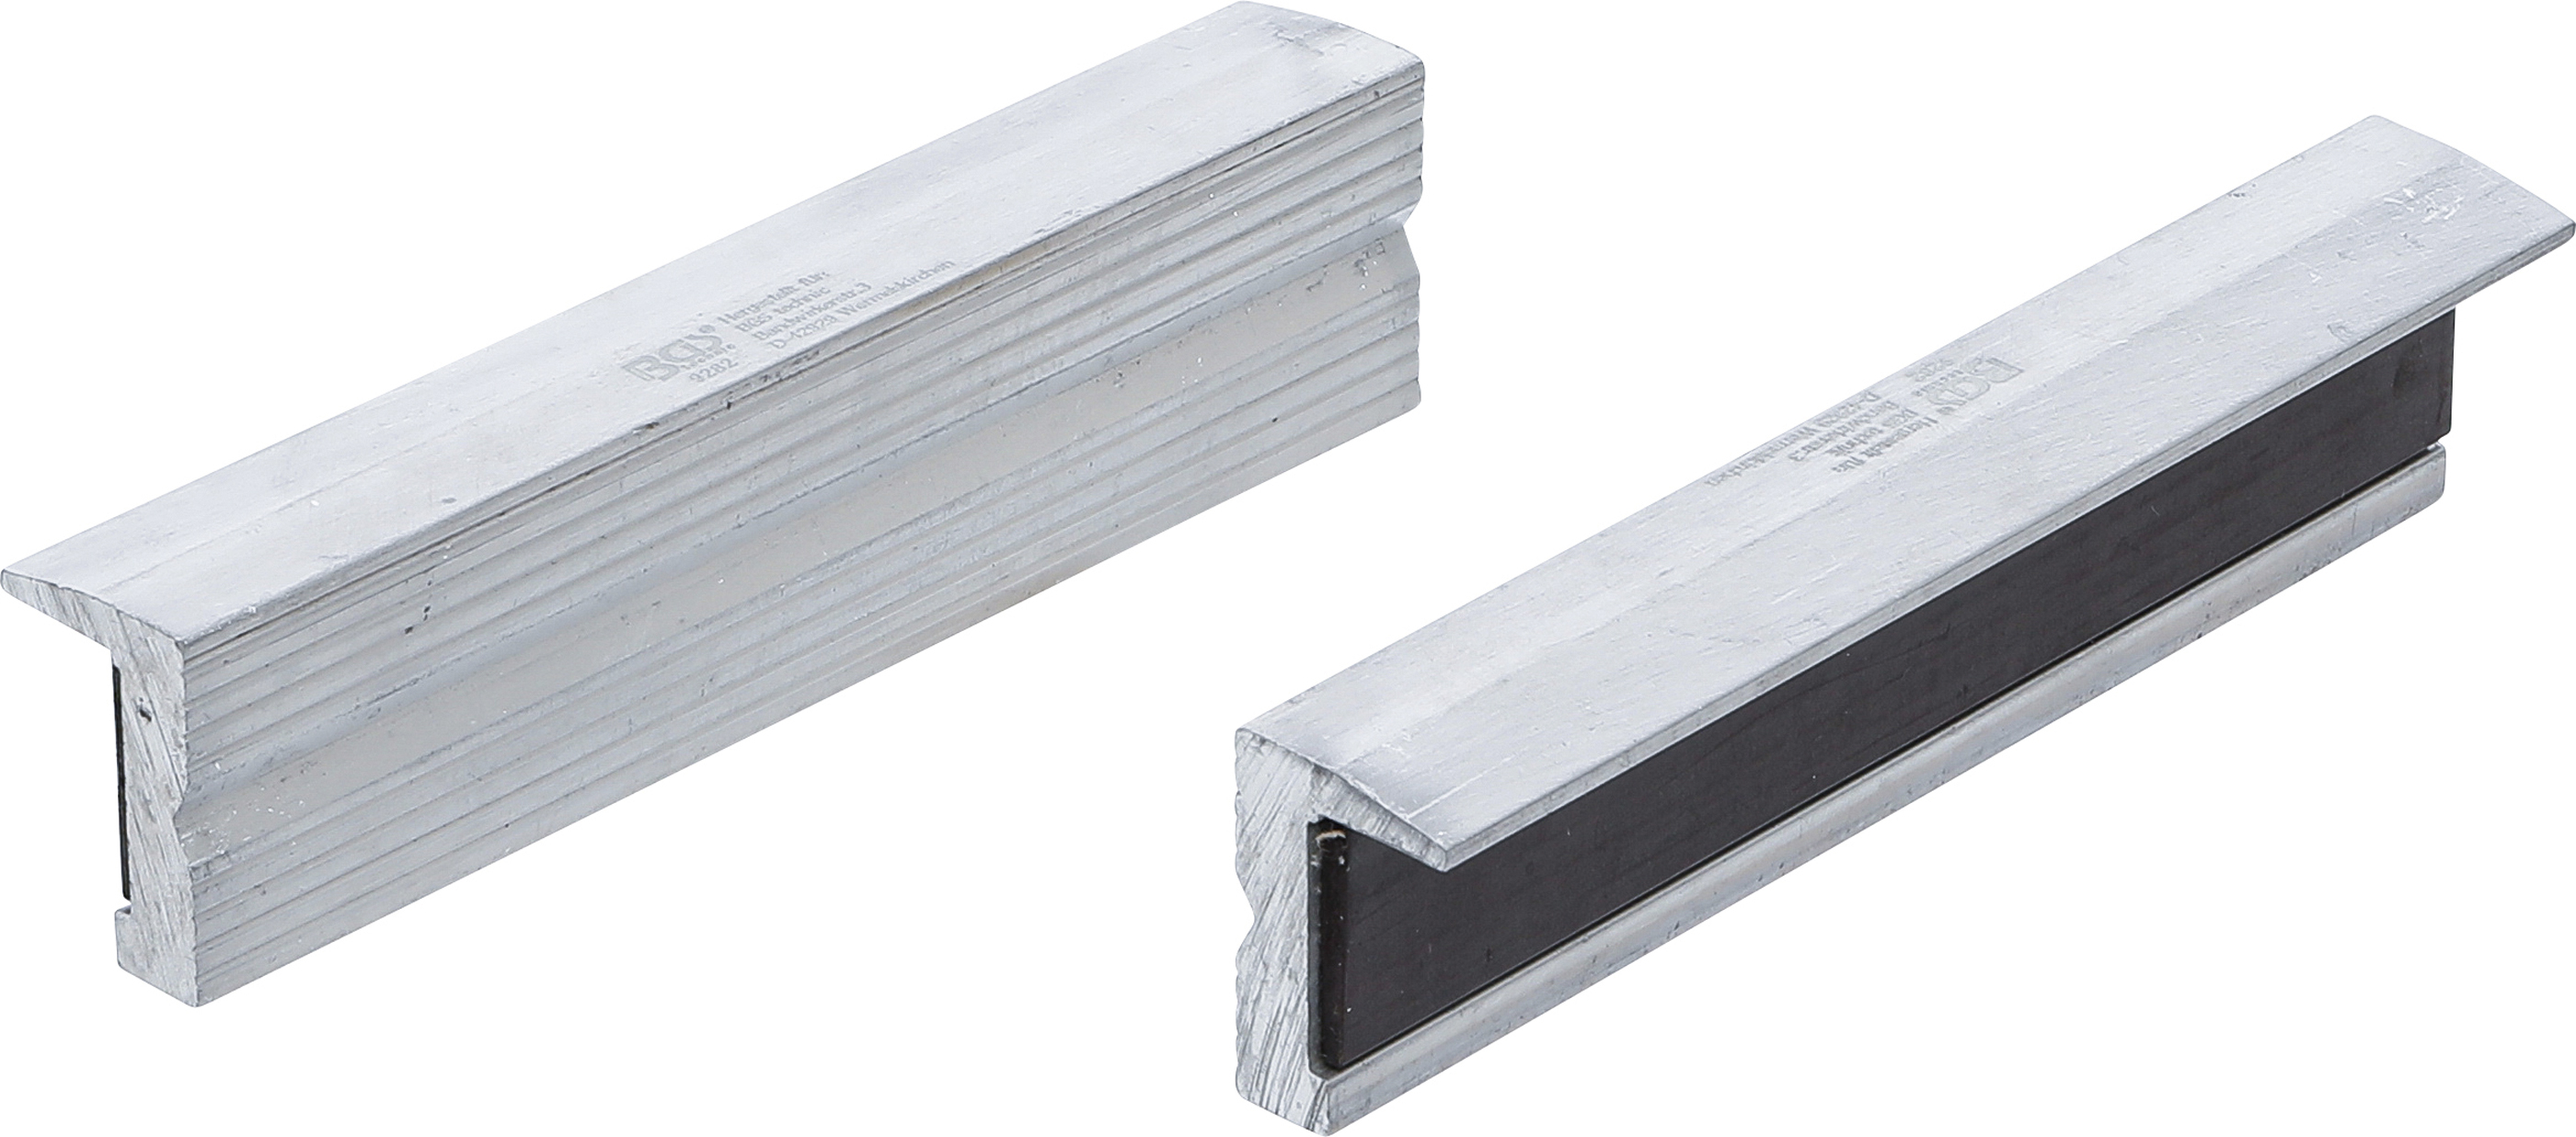 BGS 9282  Set bacuri de protectie din Aluminiu pentru menghina de banc cu prindere magnetica, lungime 125 mm